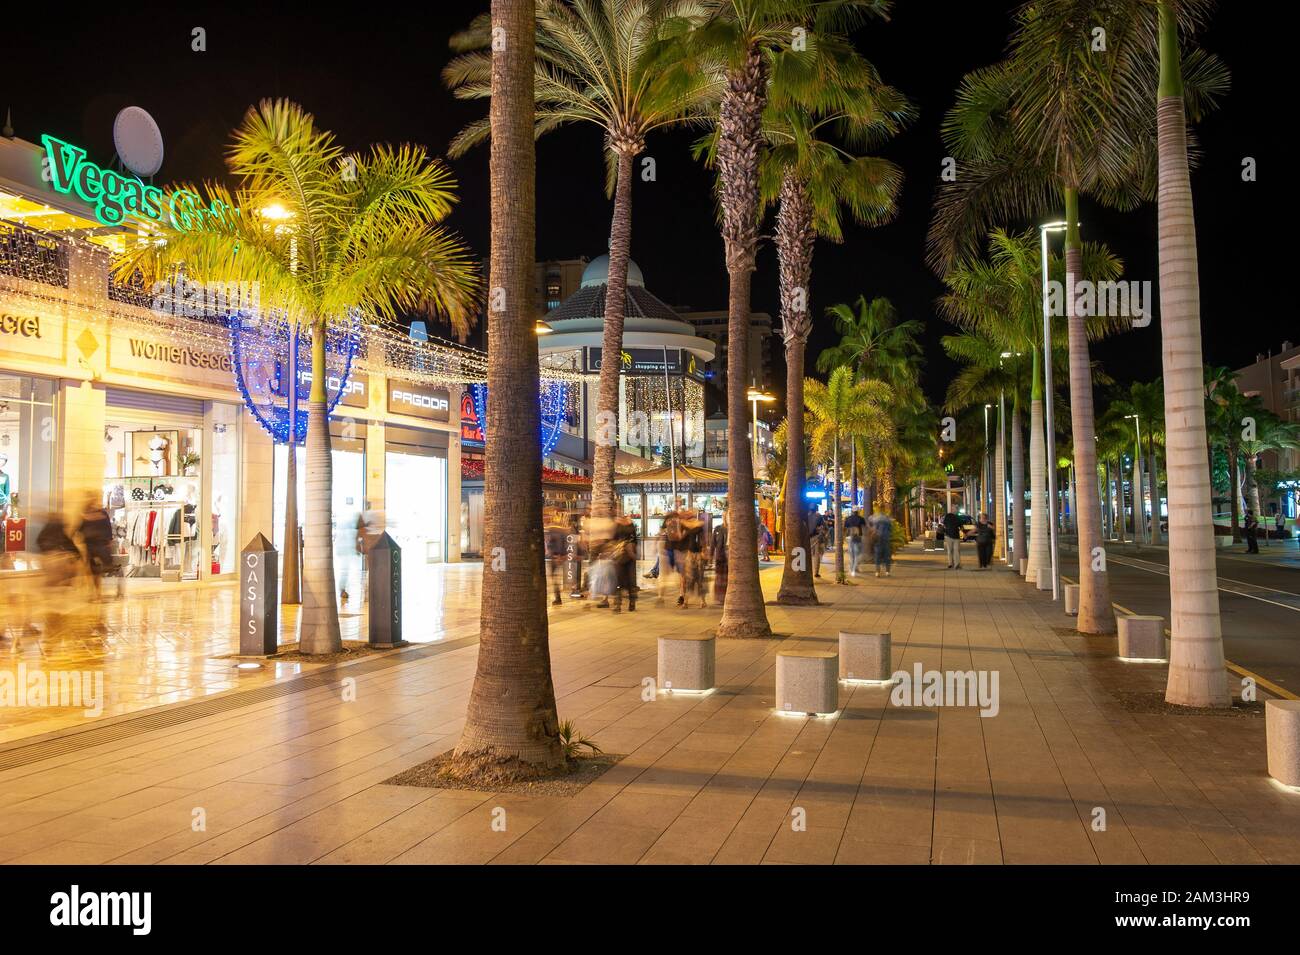 LOS CRISTIANOS - Tenerife, Espagne - DEC 29, 2019 : Centre commercial à l'avenue Avenida de las Americas dans la ville populaire Los Cristianos sur l'ac Banque D'Images